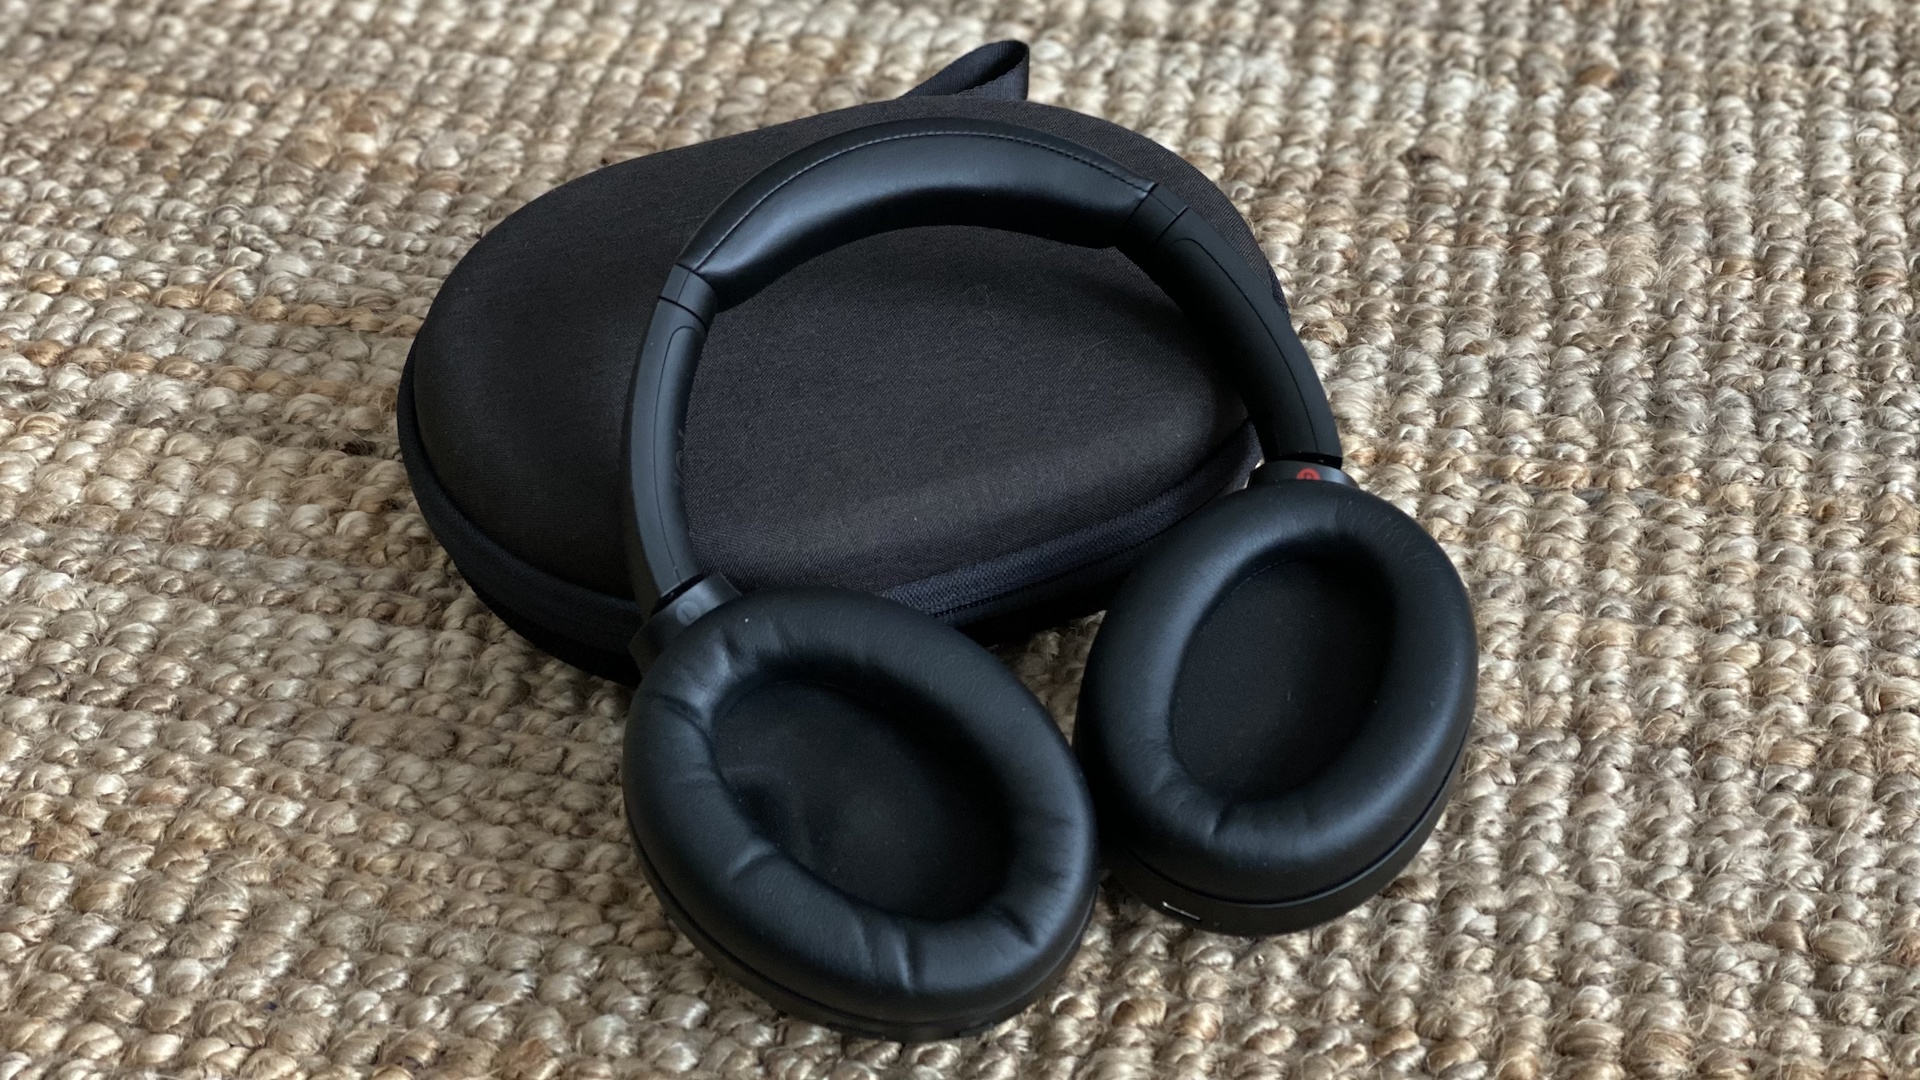 Fnac : le casque audio Sony avec réduction active du bruit à moins